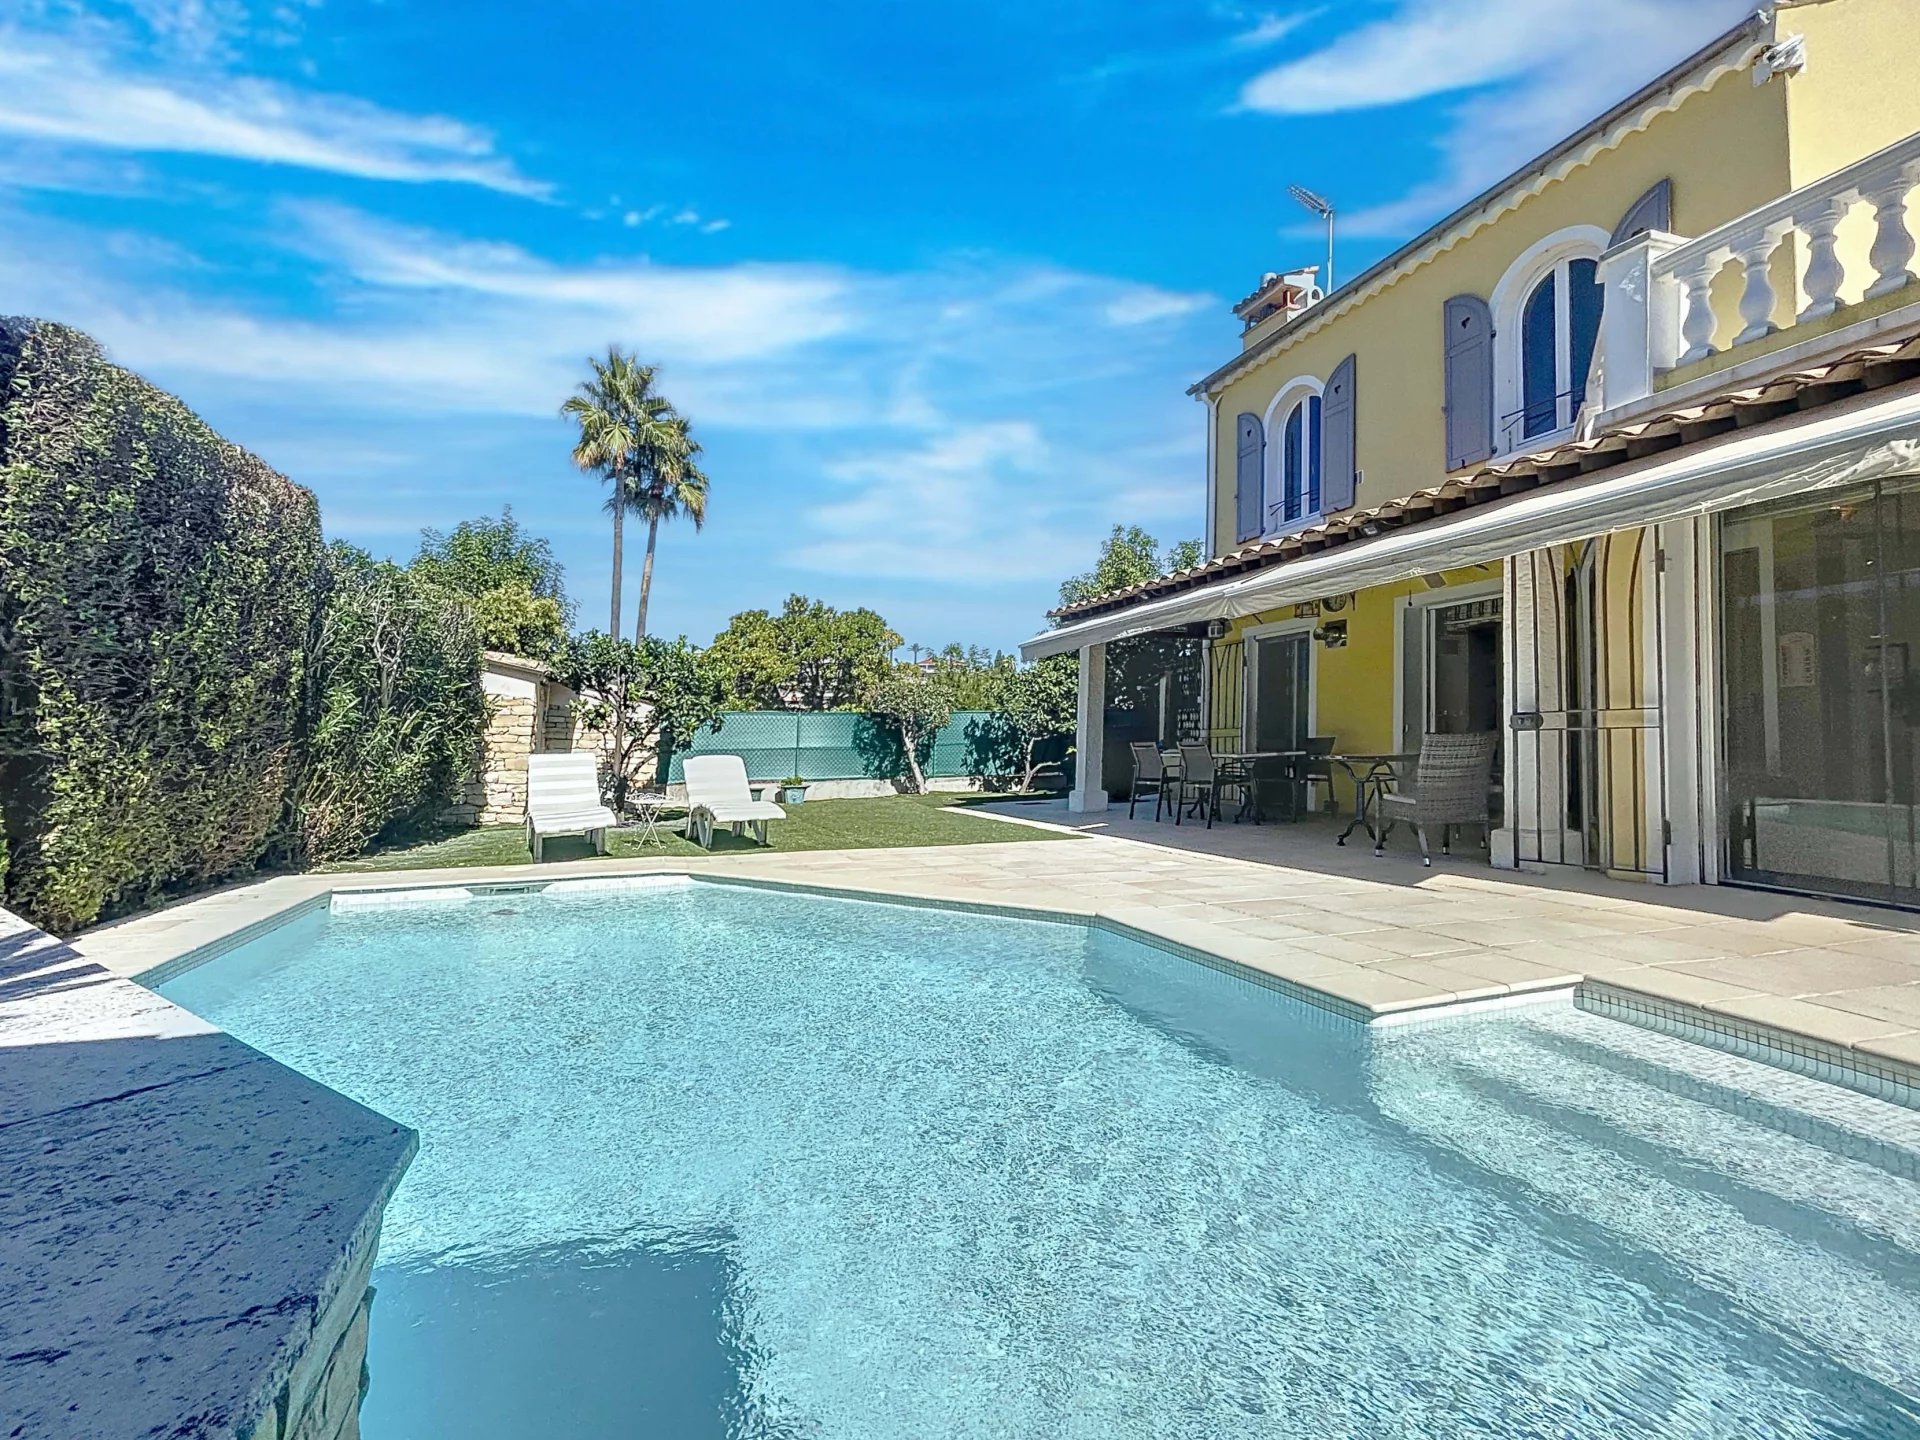 ANTIBES-JUAN LES PINS - A vendre - Villa provençale d'environ 170 m², piscine chauffée, calme,  proche commerces et plages